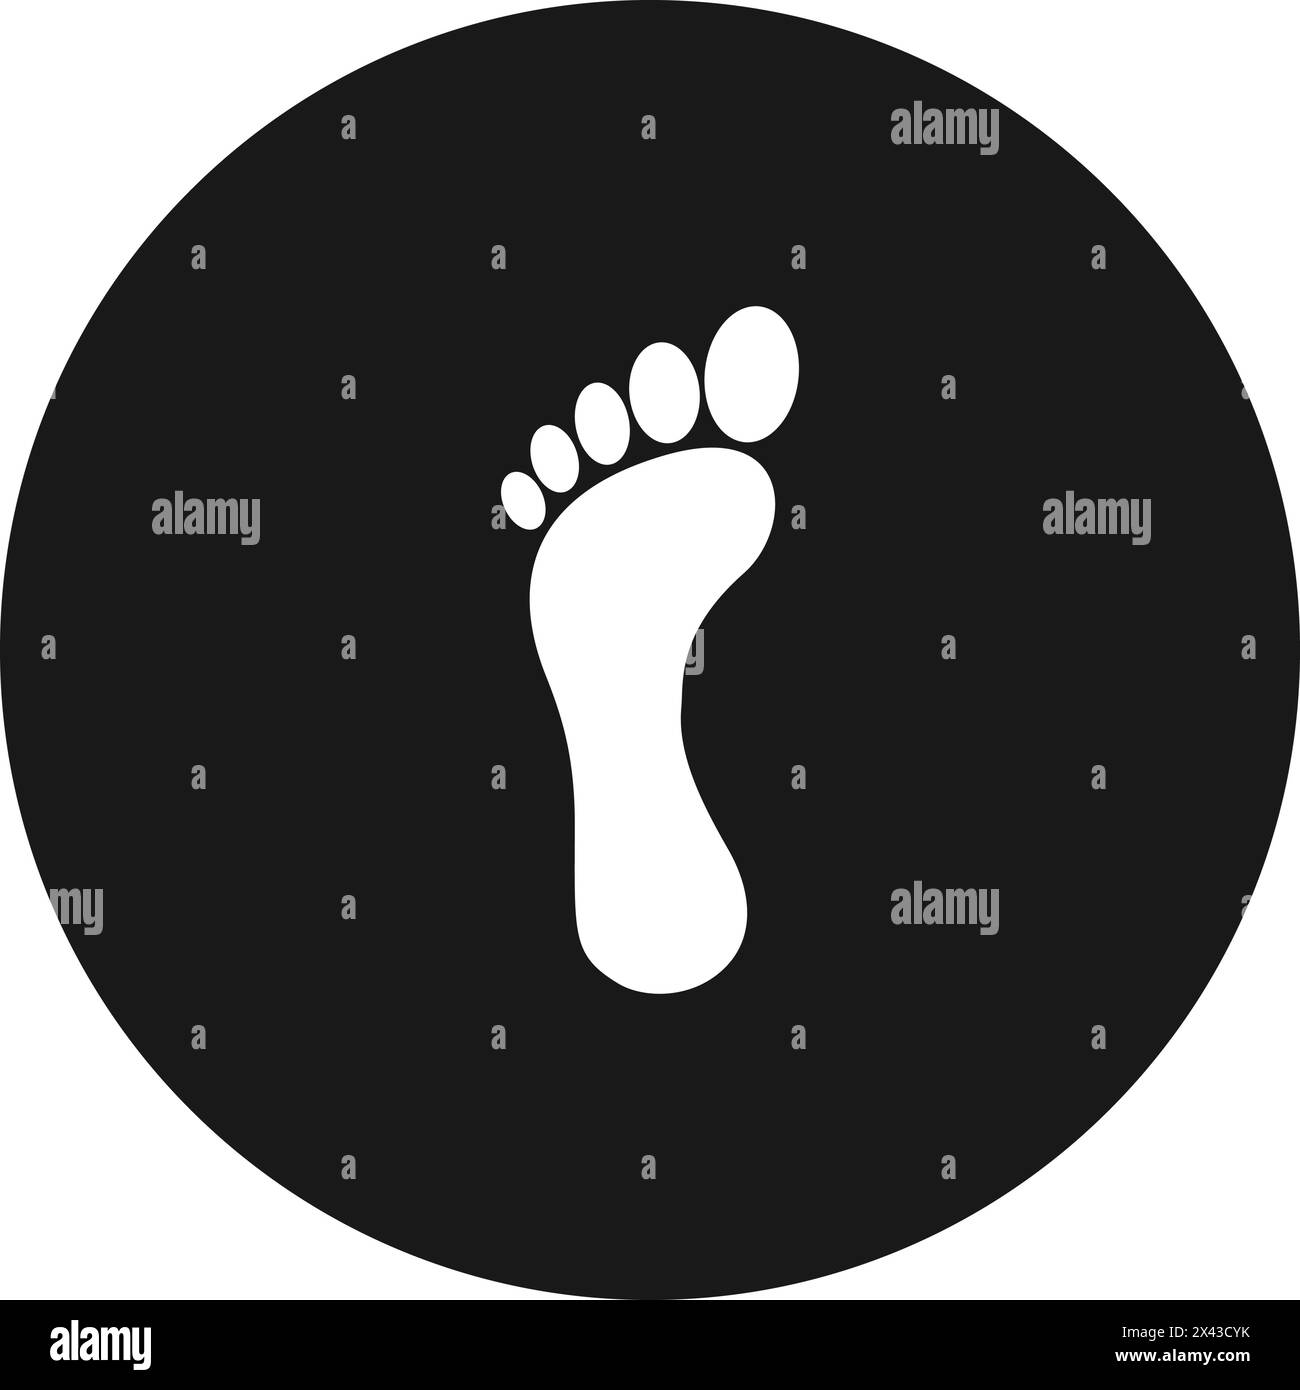 human footprint logo vector illustration design Stock Vector